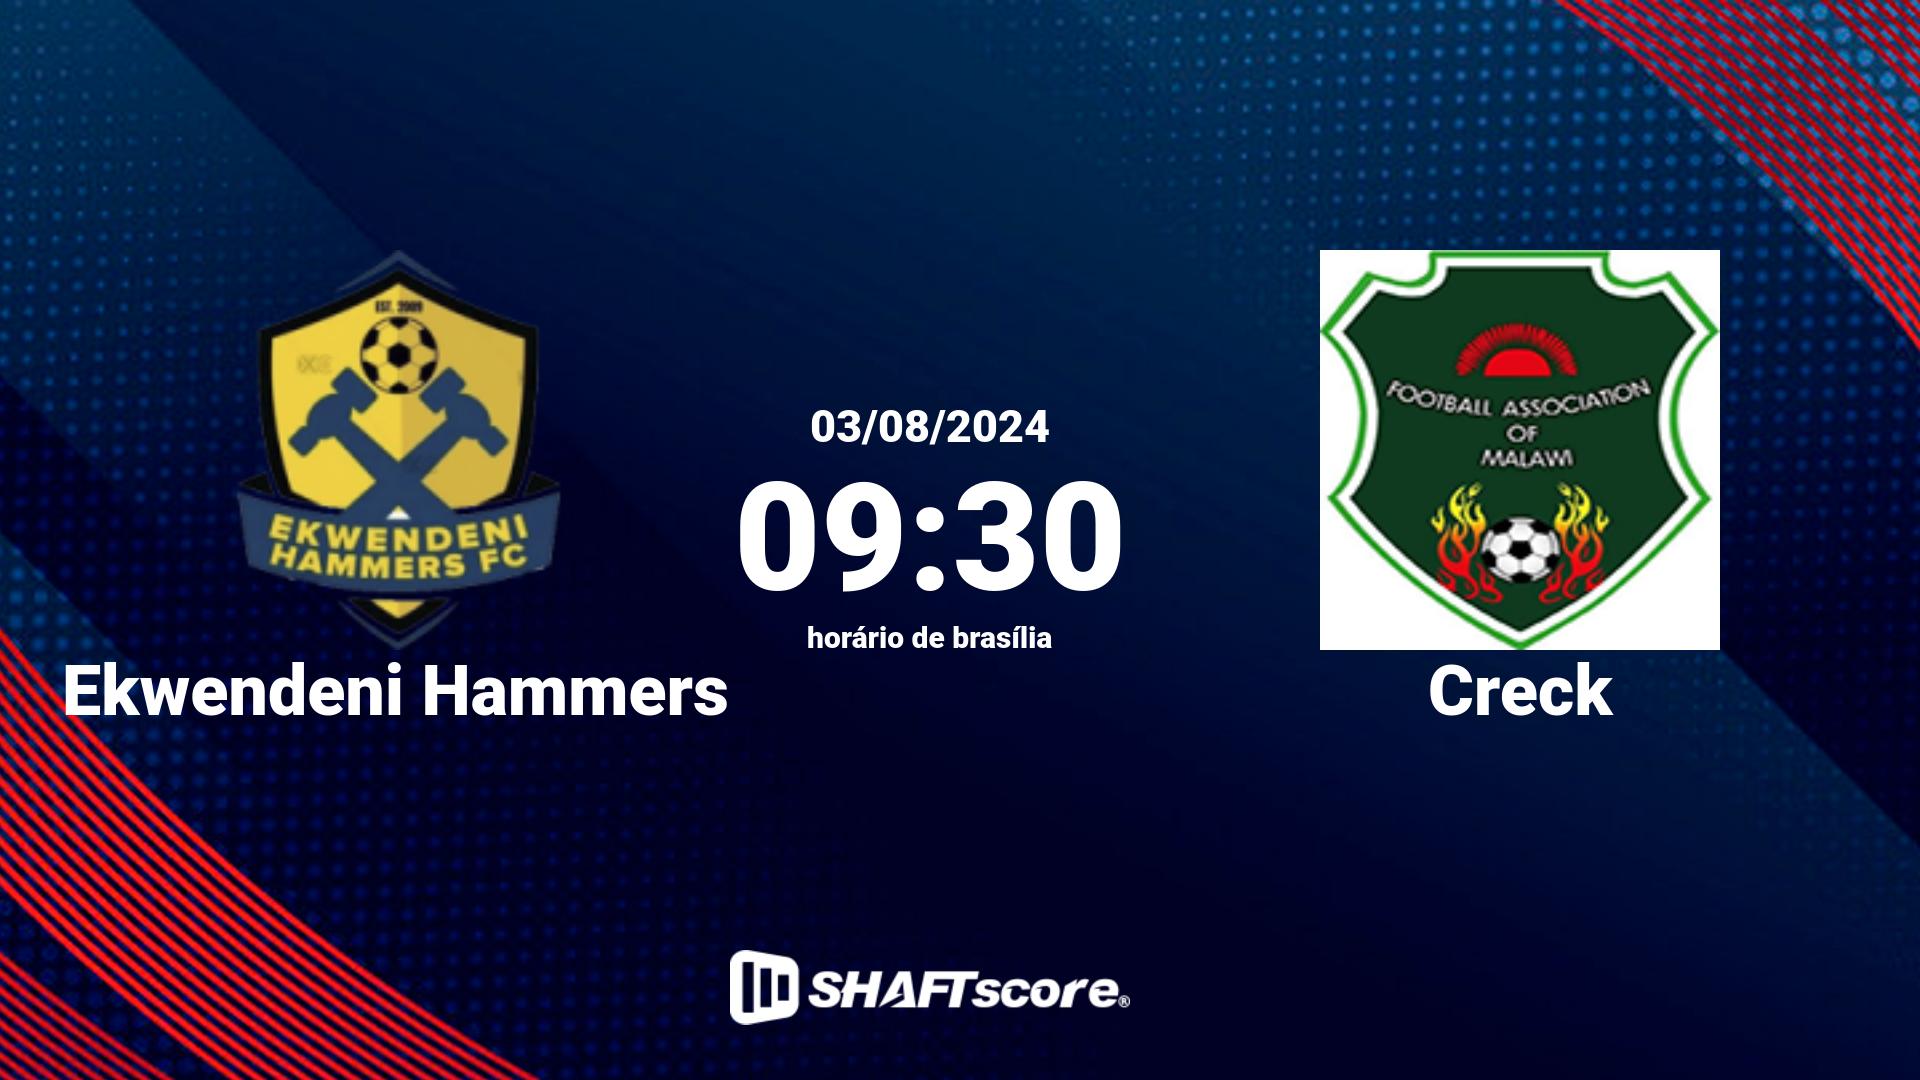 Estatísticas do jogo Ekwendeni Hammers vs Creck 03.08 09:30